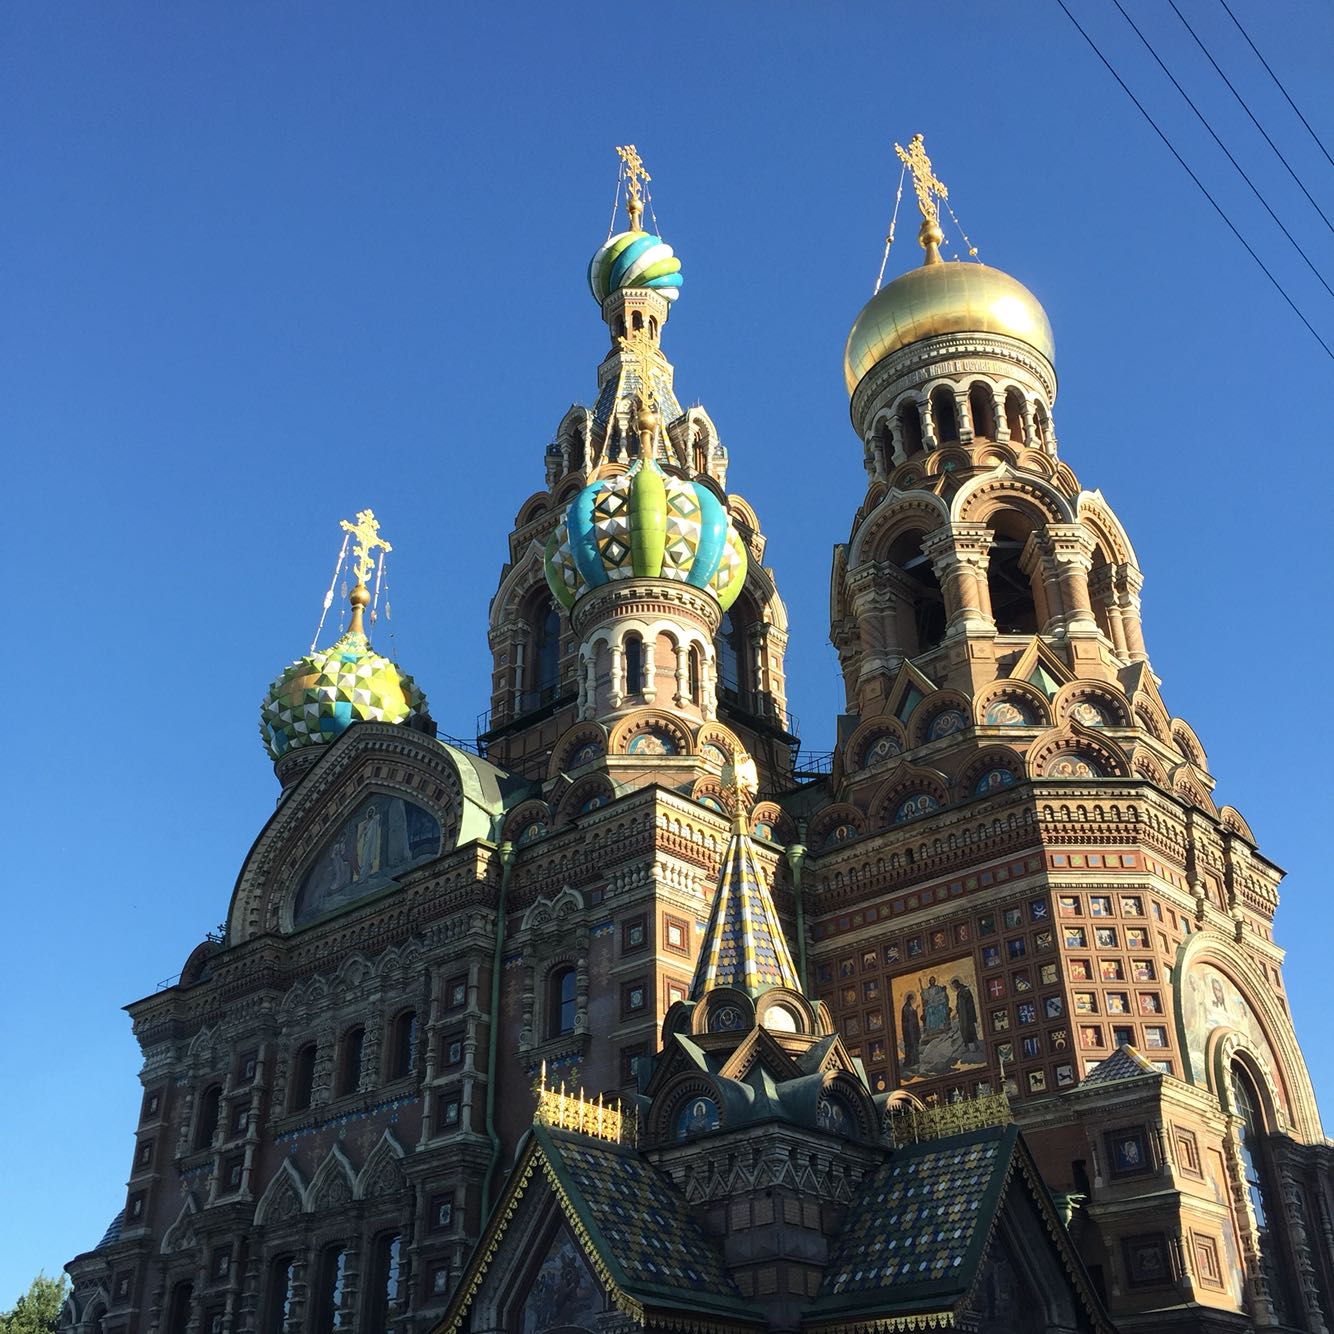 外形就美美哒比洋葱头颜色更加绚丽 内容嘛 亲 圣彼得堡是宗教天地呀！